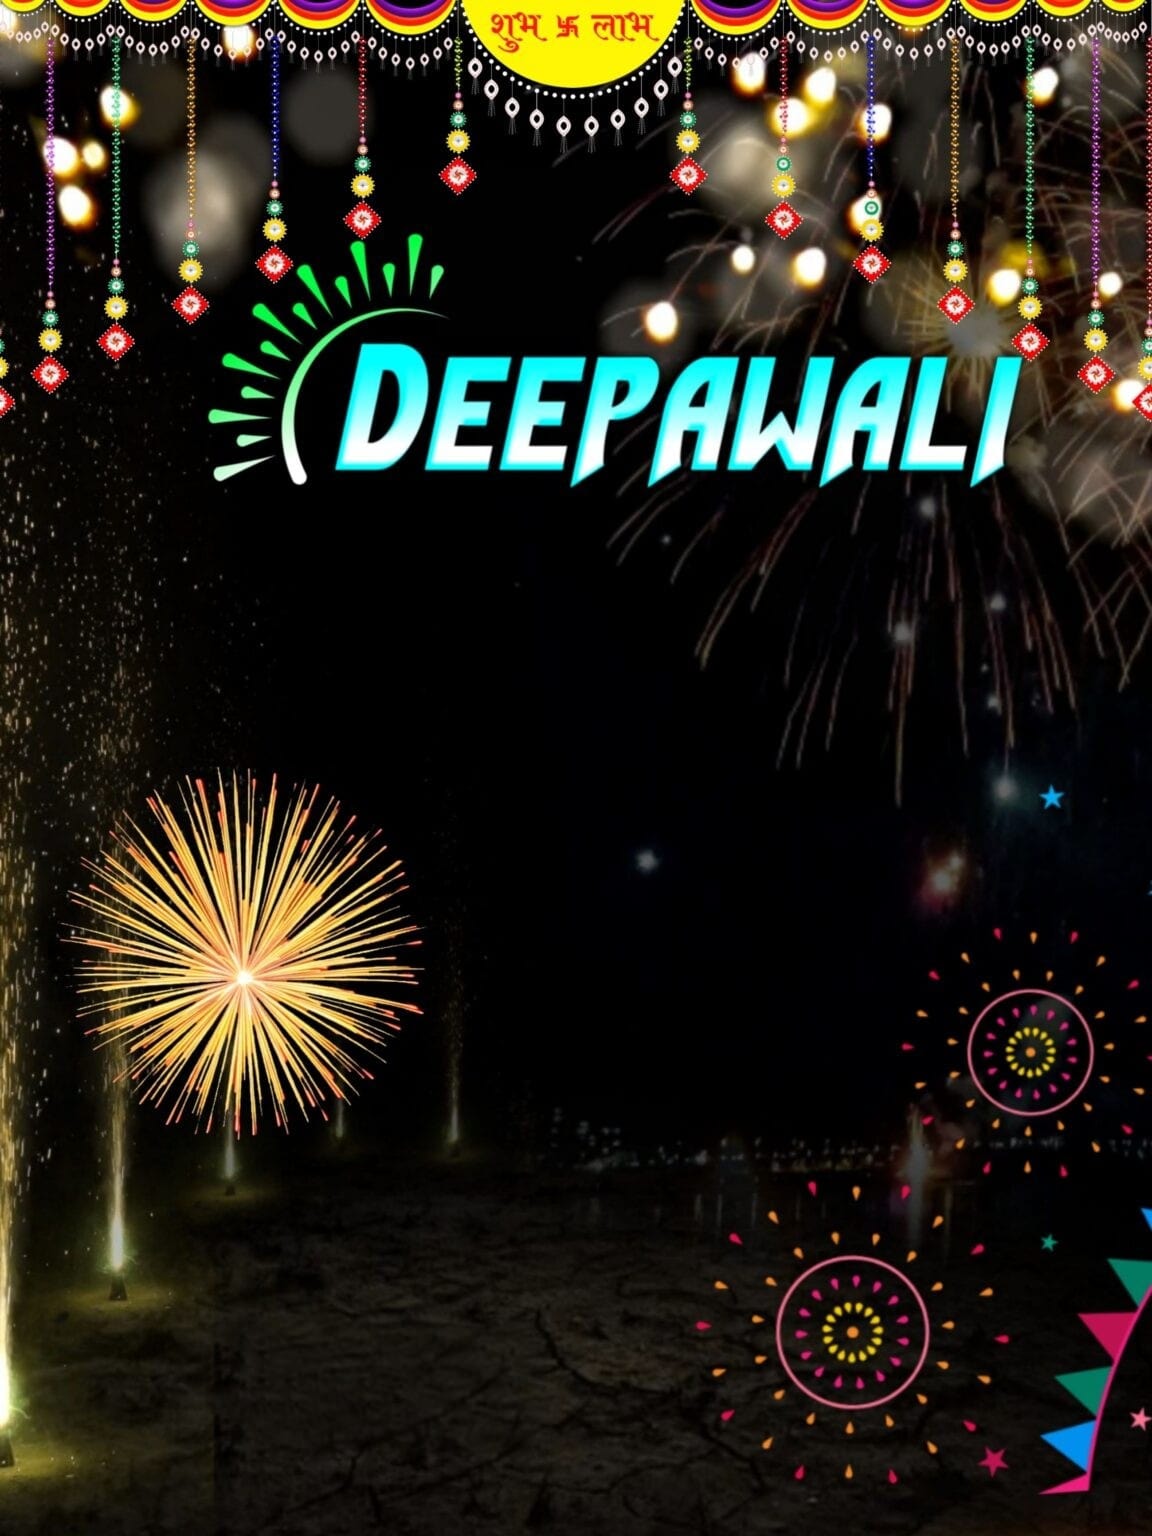 Deepawali background Image 